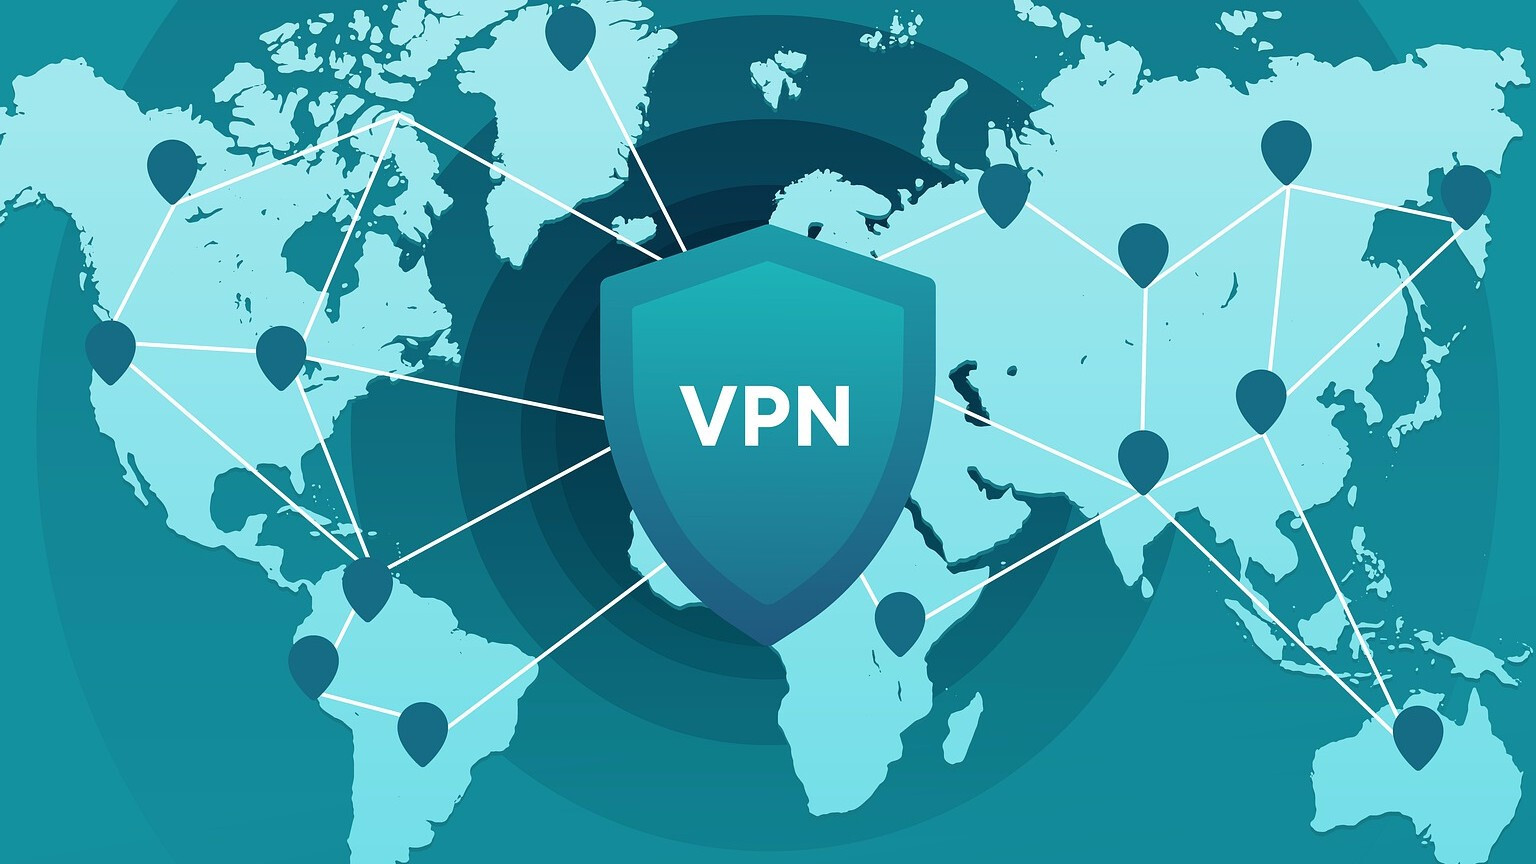  VPN    